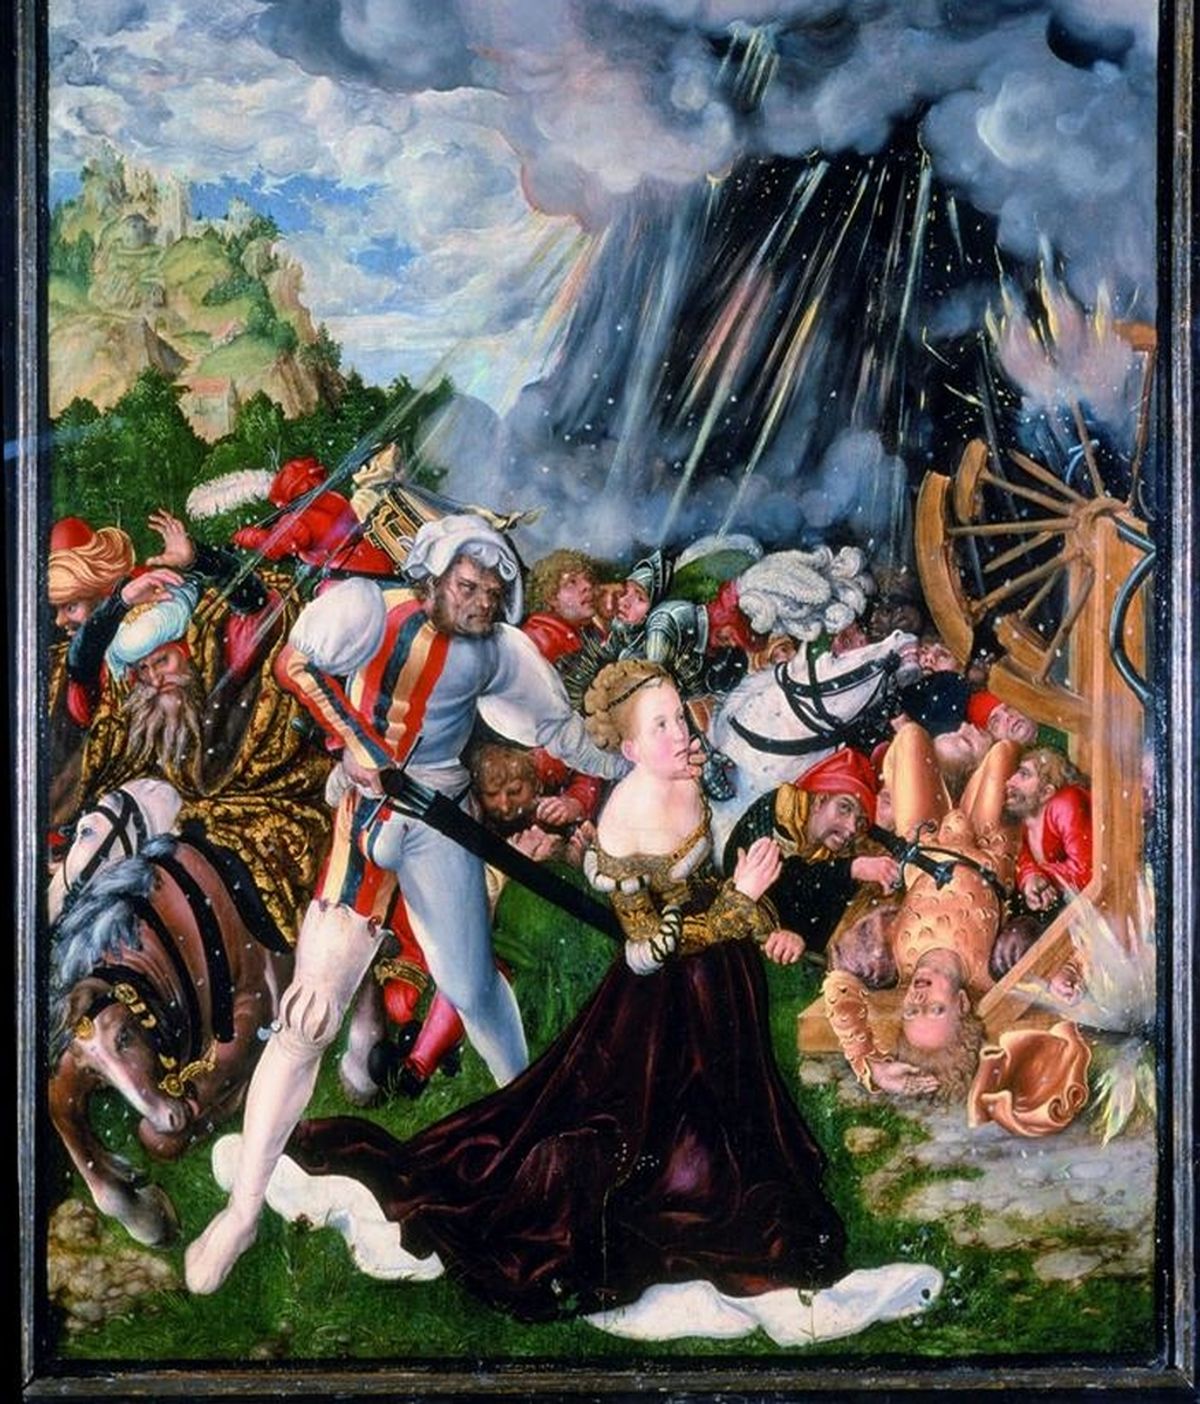 Fotografía facilitada por el Museo de Luxemburgo, del cuadro "Martirio de Santa Catalina", del pintor y diseñador de grabados renacentista alemán Lucas Cranach "El Viejo". EFE